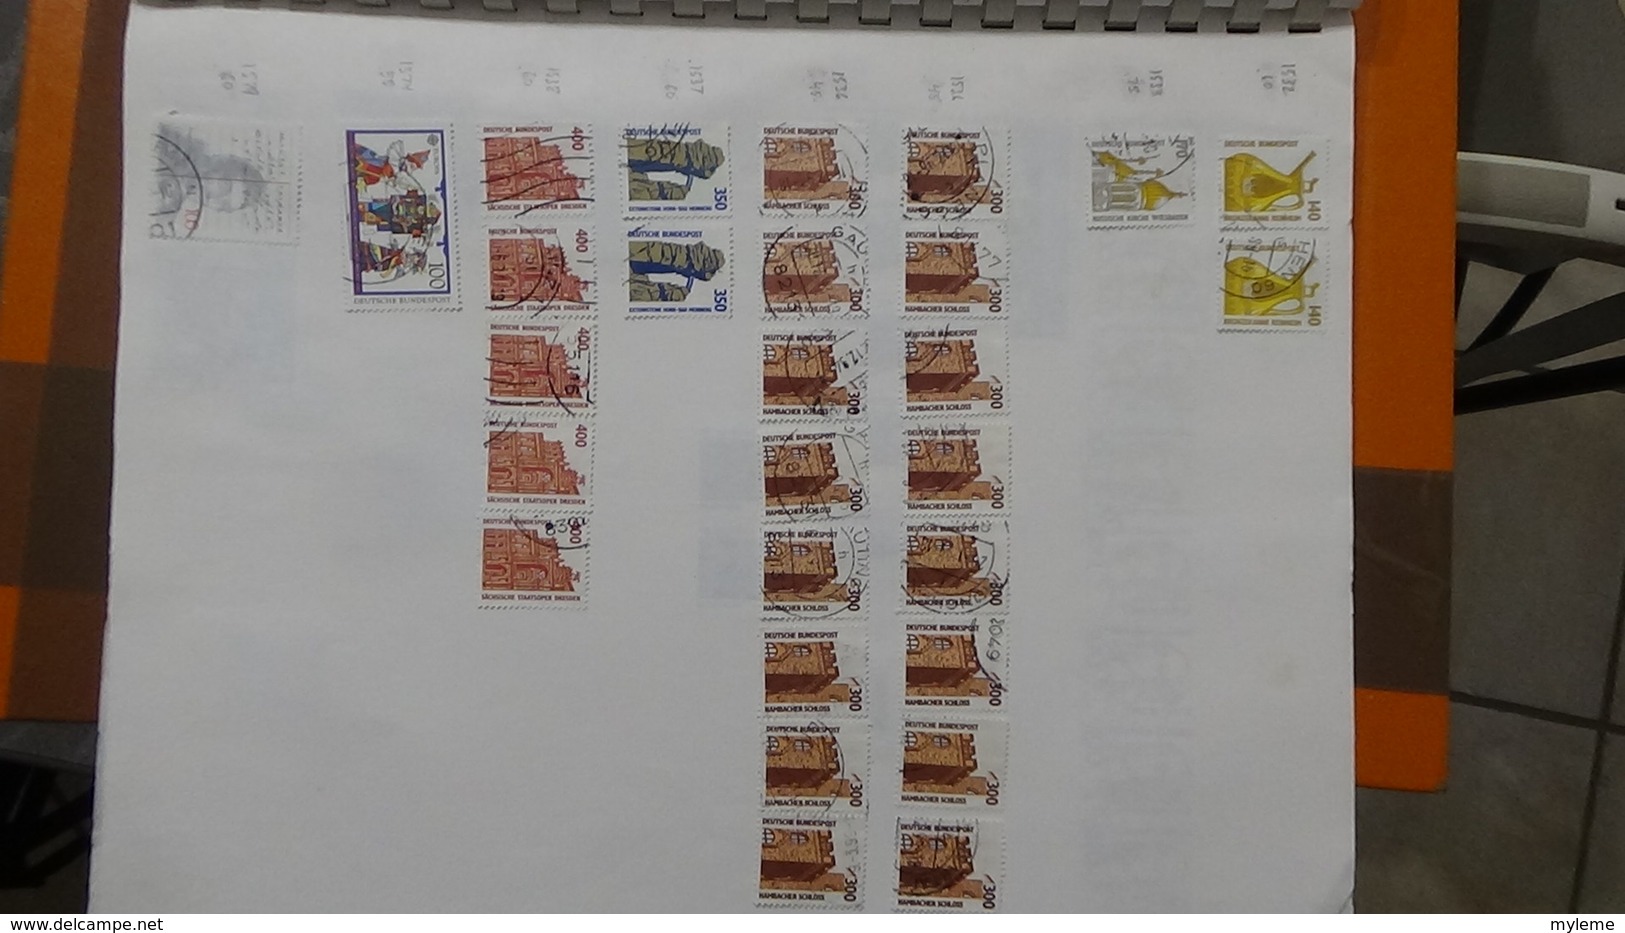 A238 Cahier de timbres d'Allemagne dont fin de catalogue. A saisir !!! Voir commentaires